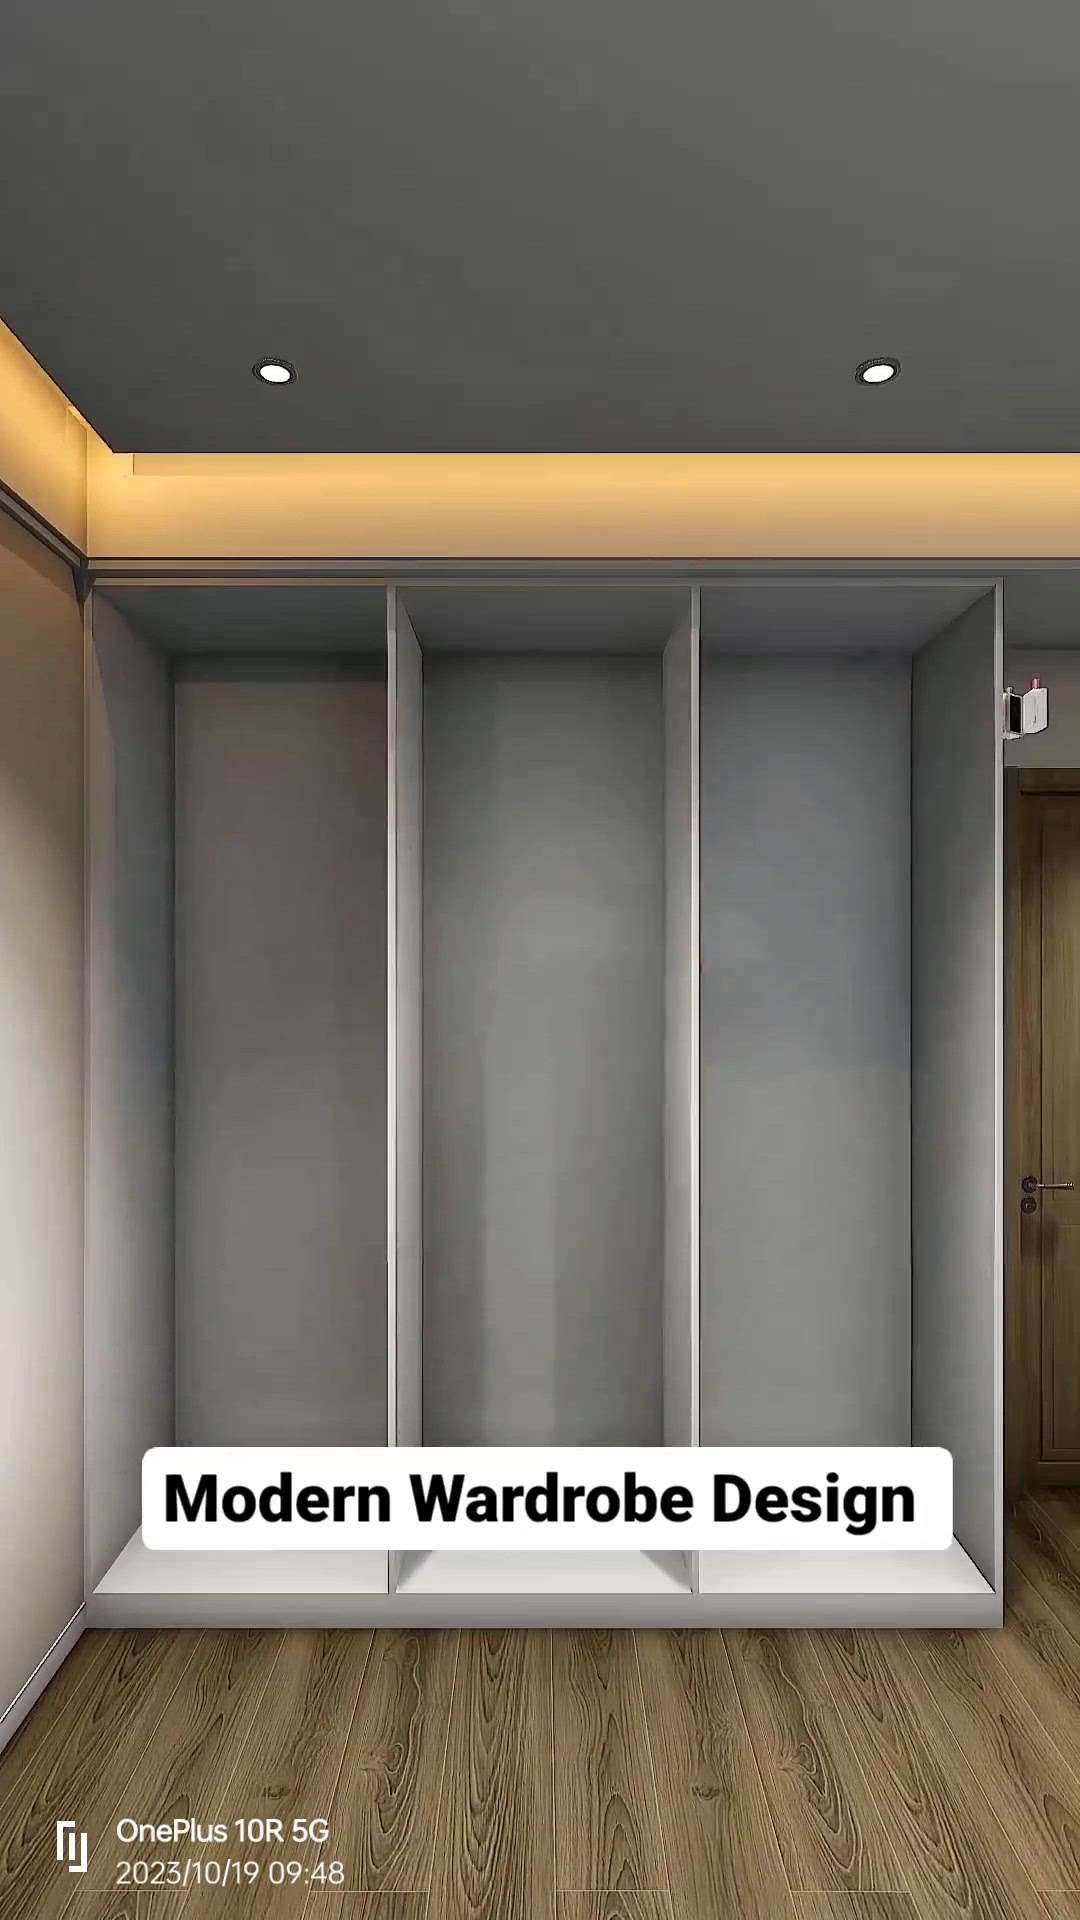 modern wardrobe design
 #WoodenKitchen 
 #WardrobeIdeas 
 #modularwardrobe  
 #woodendesign